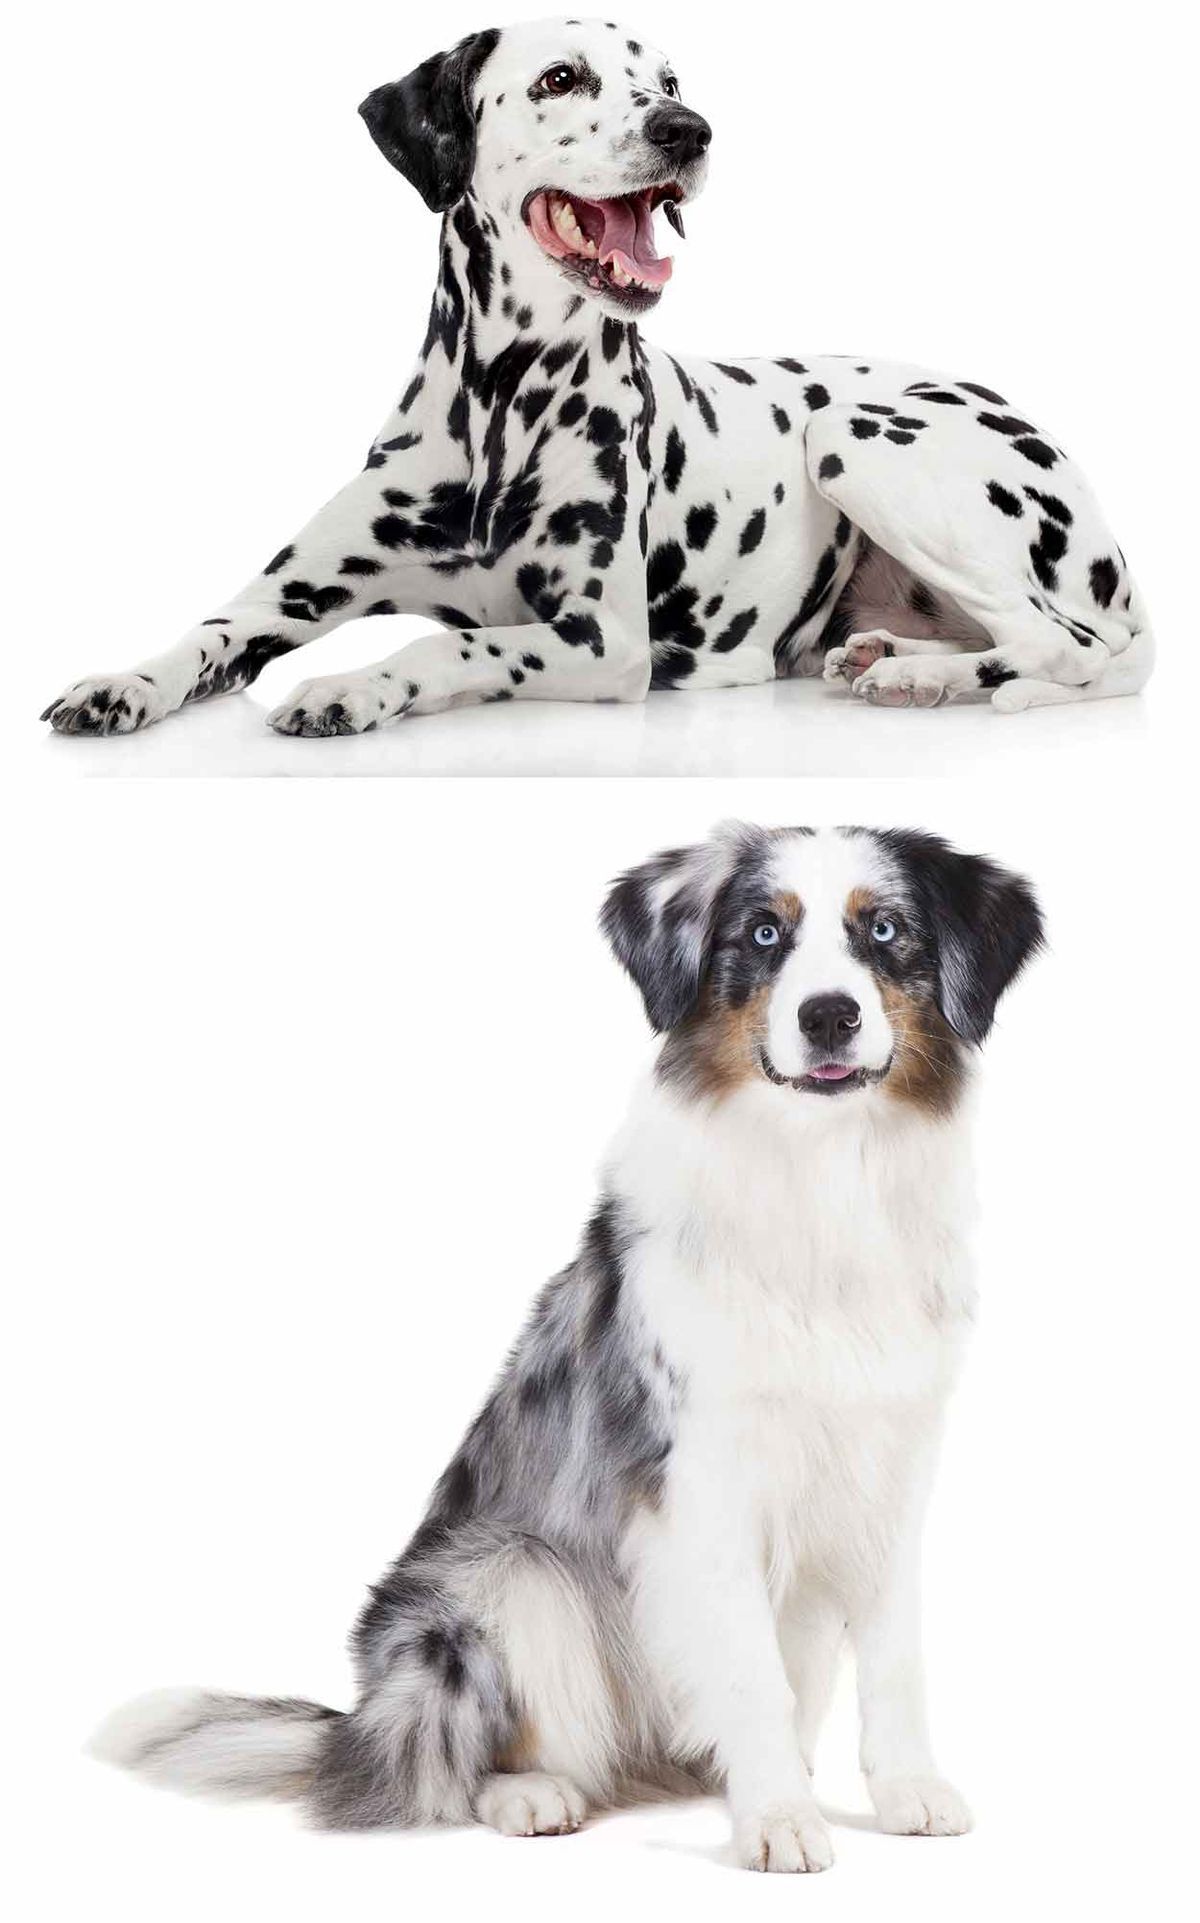 Australian Shepherd Dalmatian Mix - Est-ce votre chien de rêve?